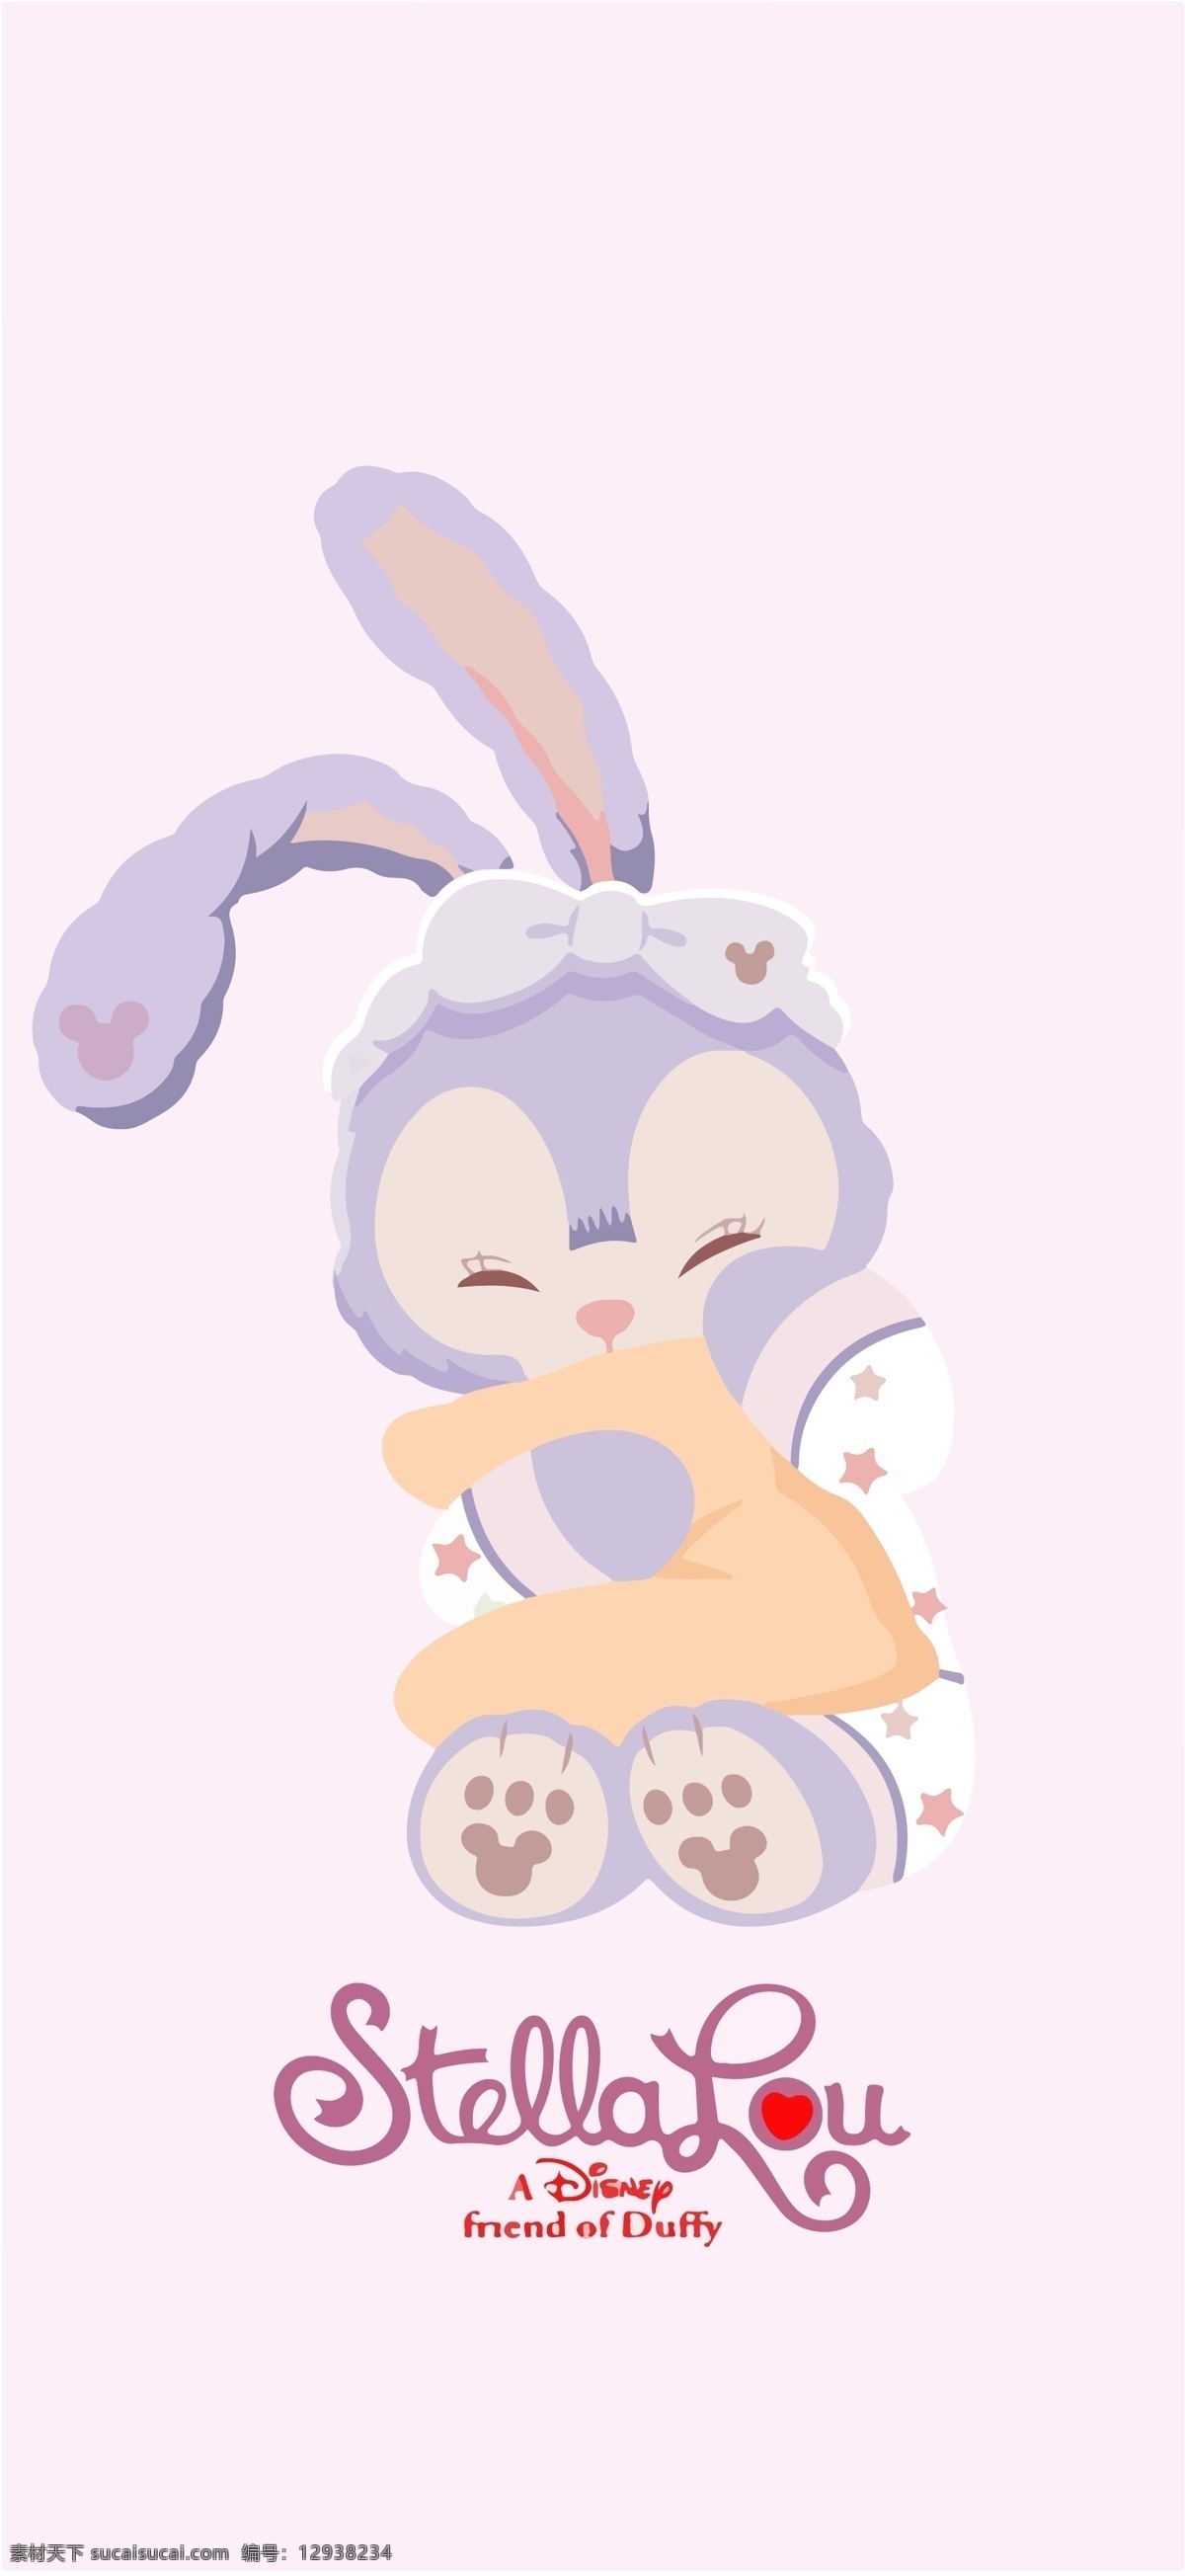 迪士尼 星 戴 露 睡衣 星戴露 紫色的兔子 达菲的朋友 芭蕾兔 动漫动画 动漫人物